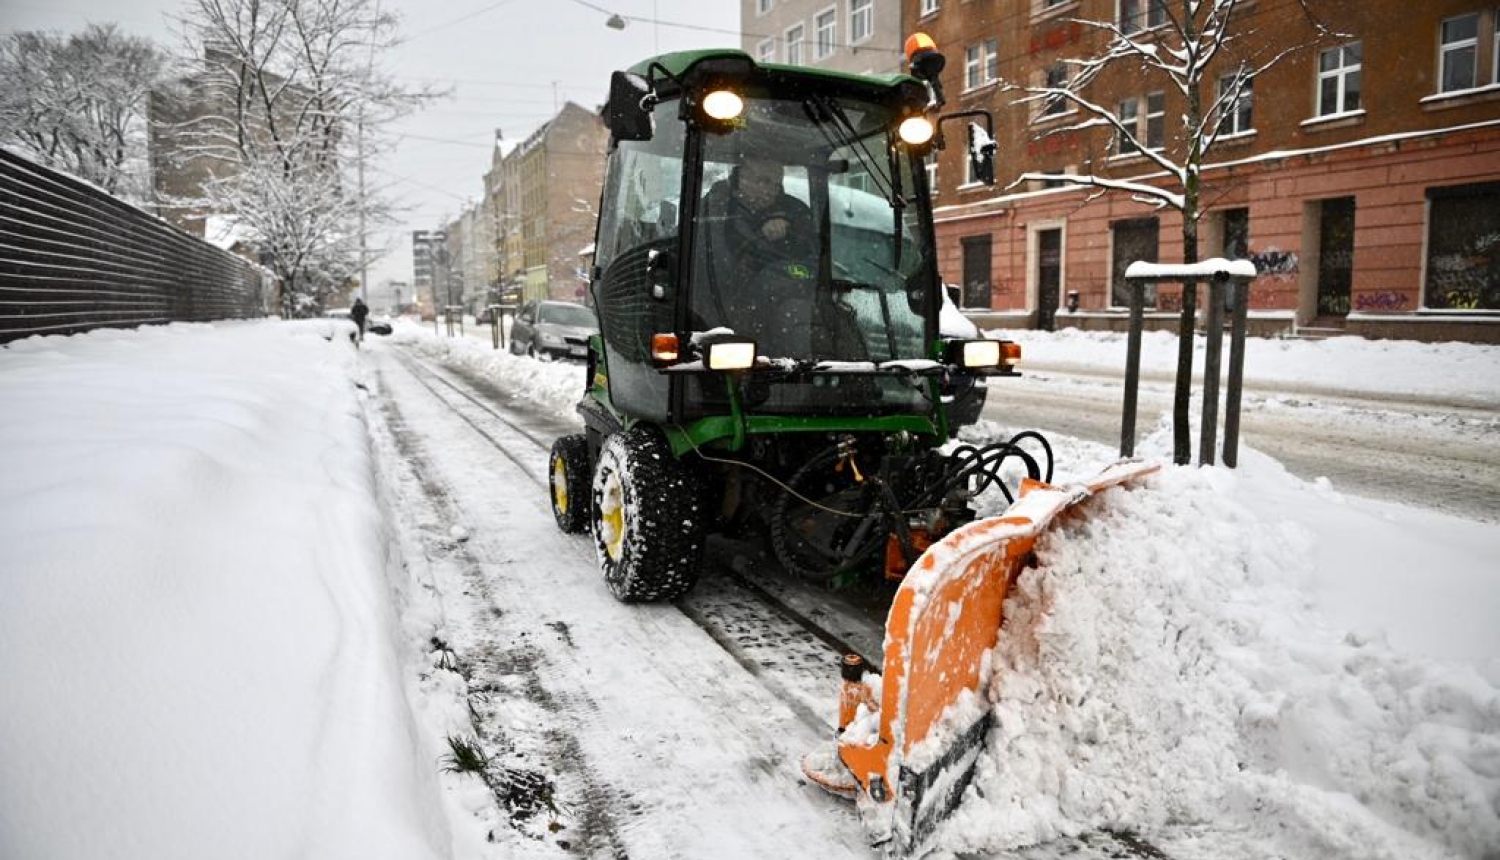 Traktors tīra sniegu